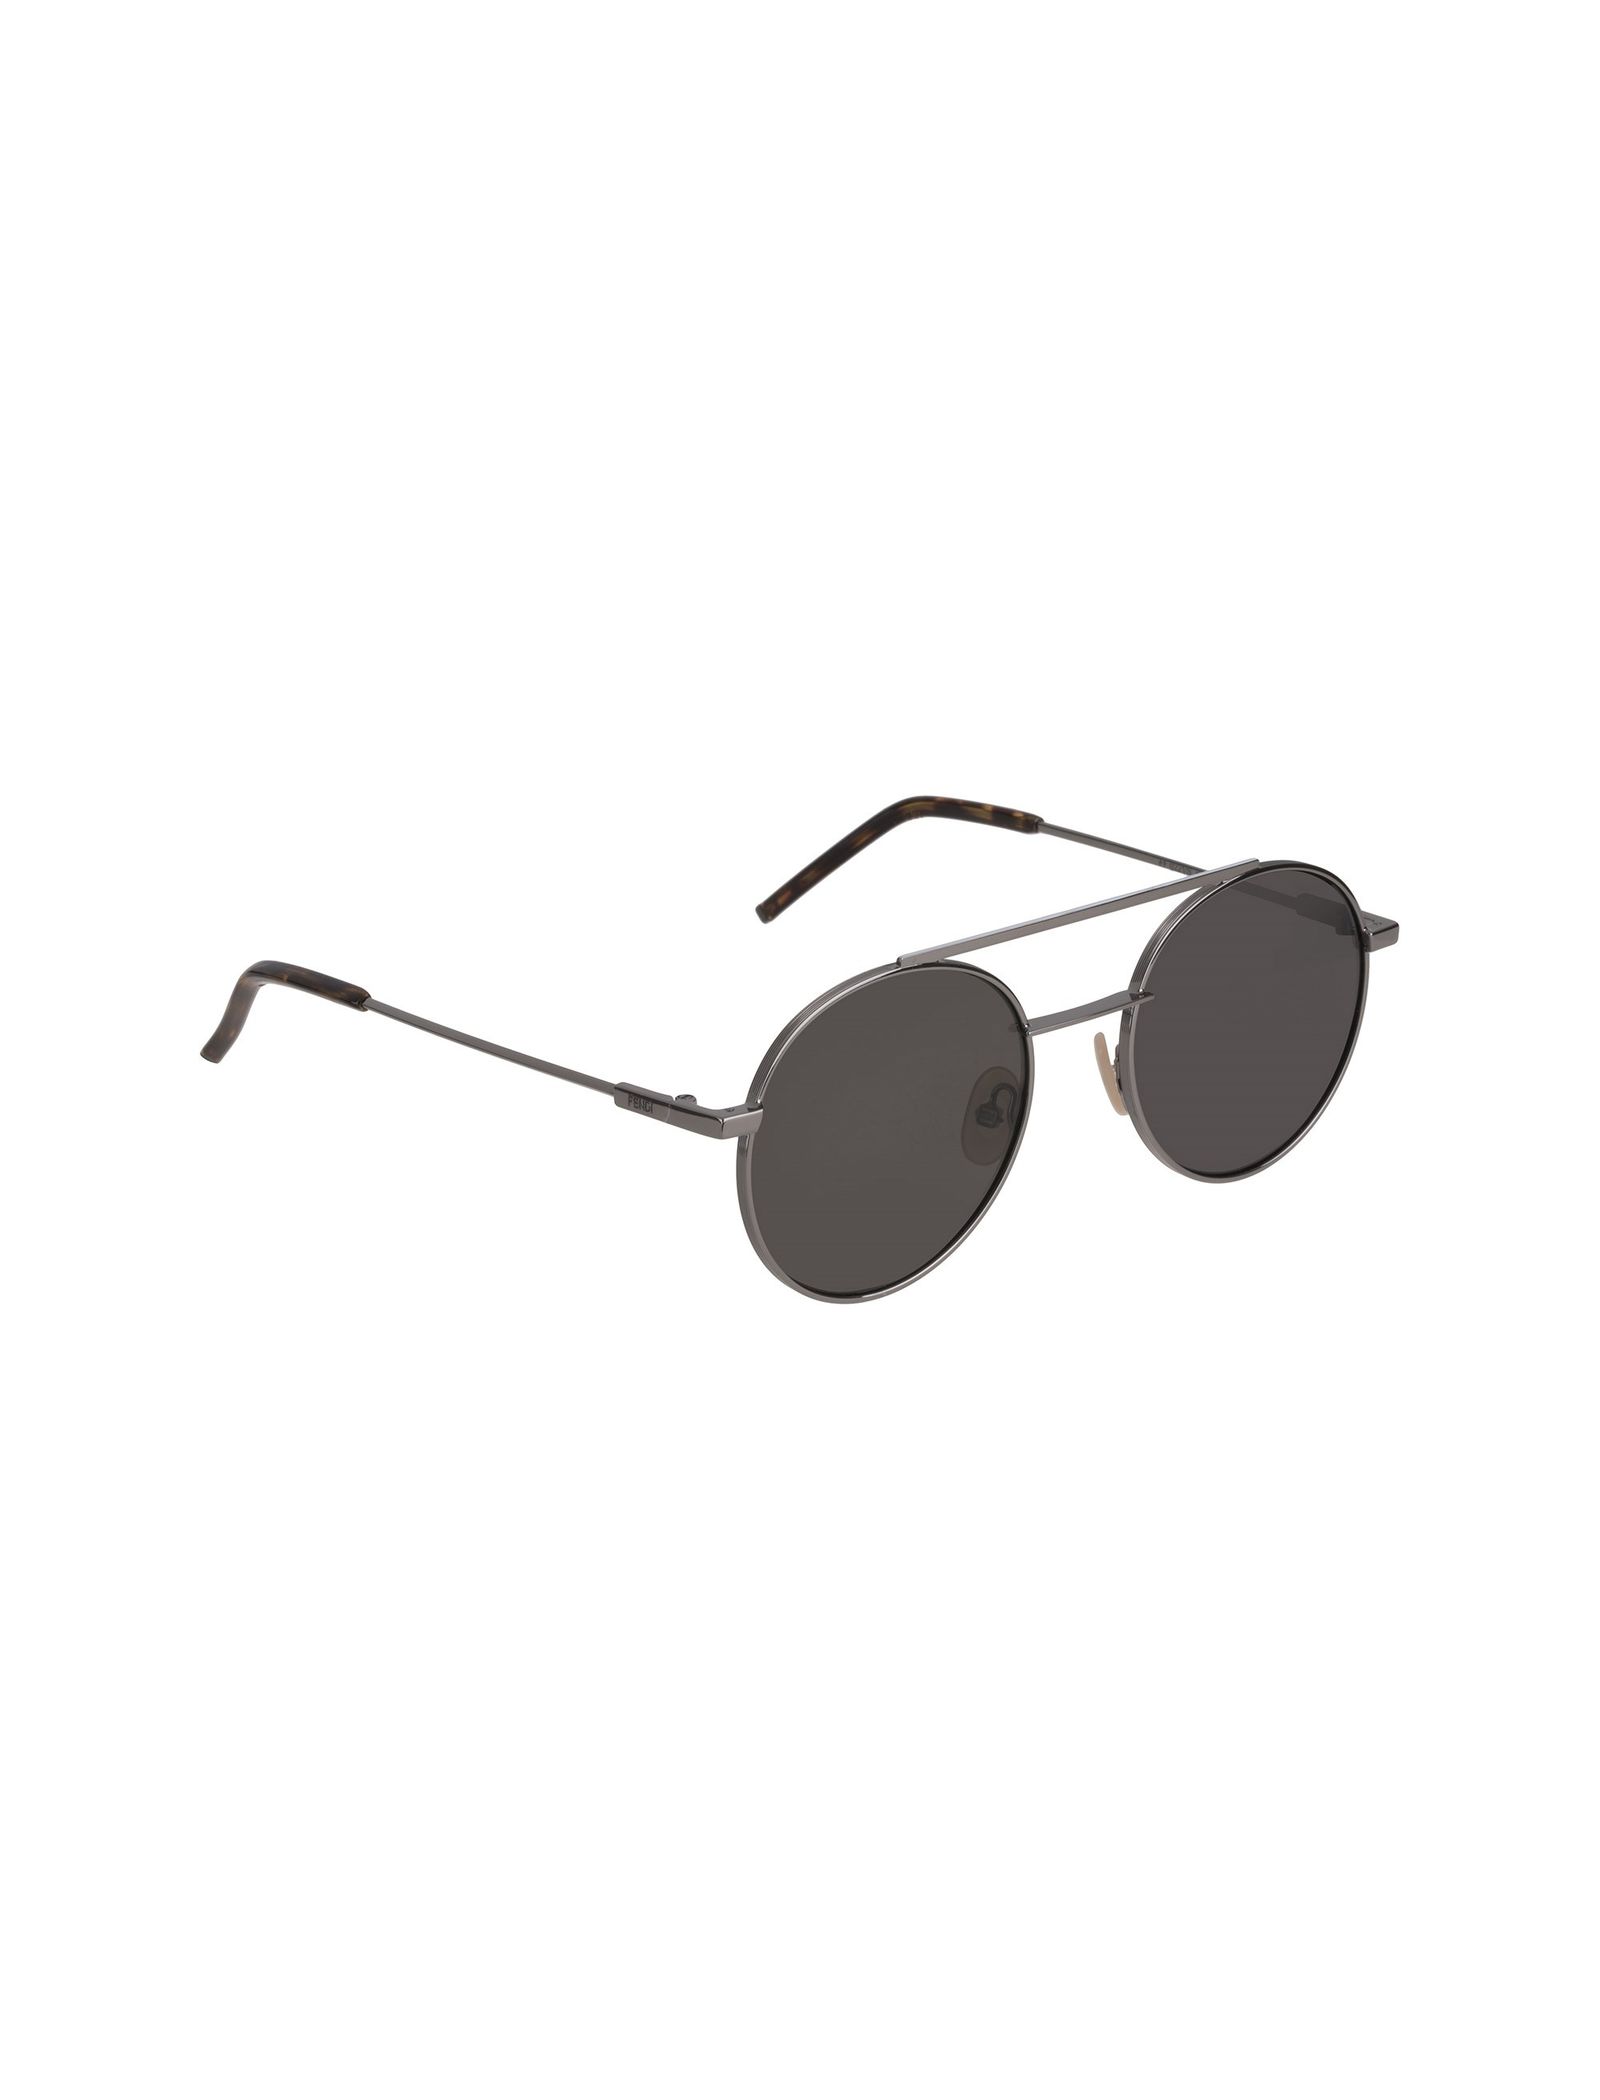 عینک آفتابی خلبانی مردانه - فندی - نقره اي - 3